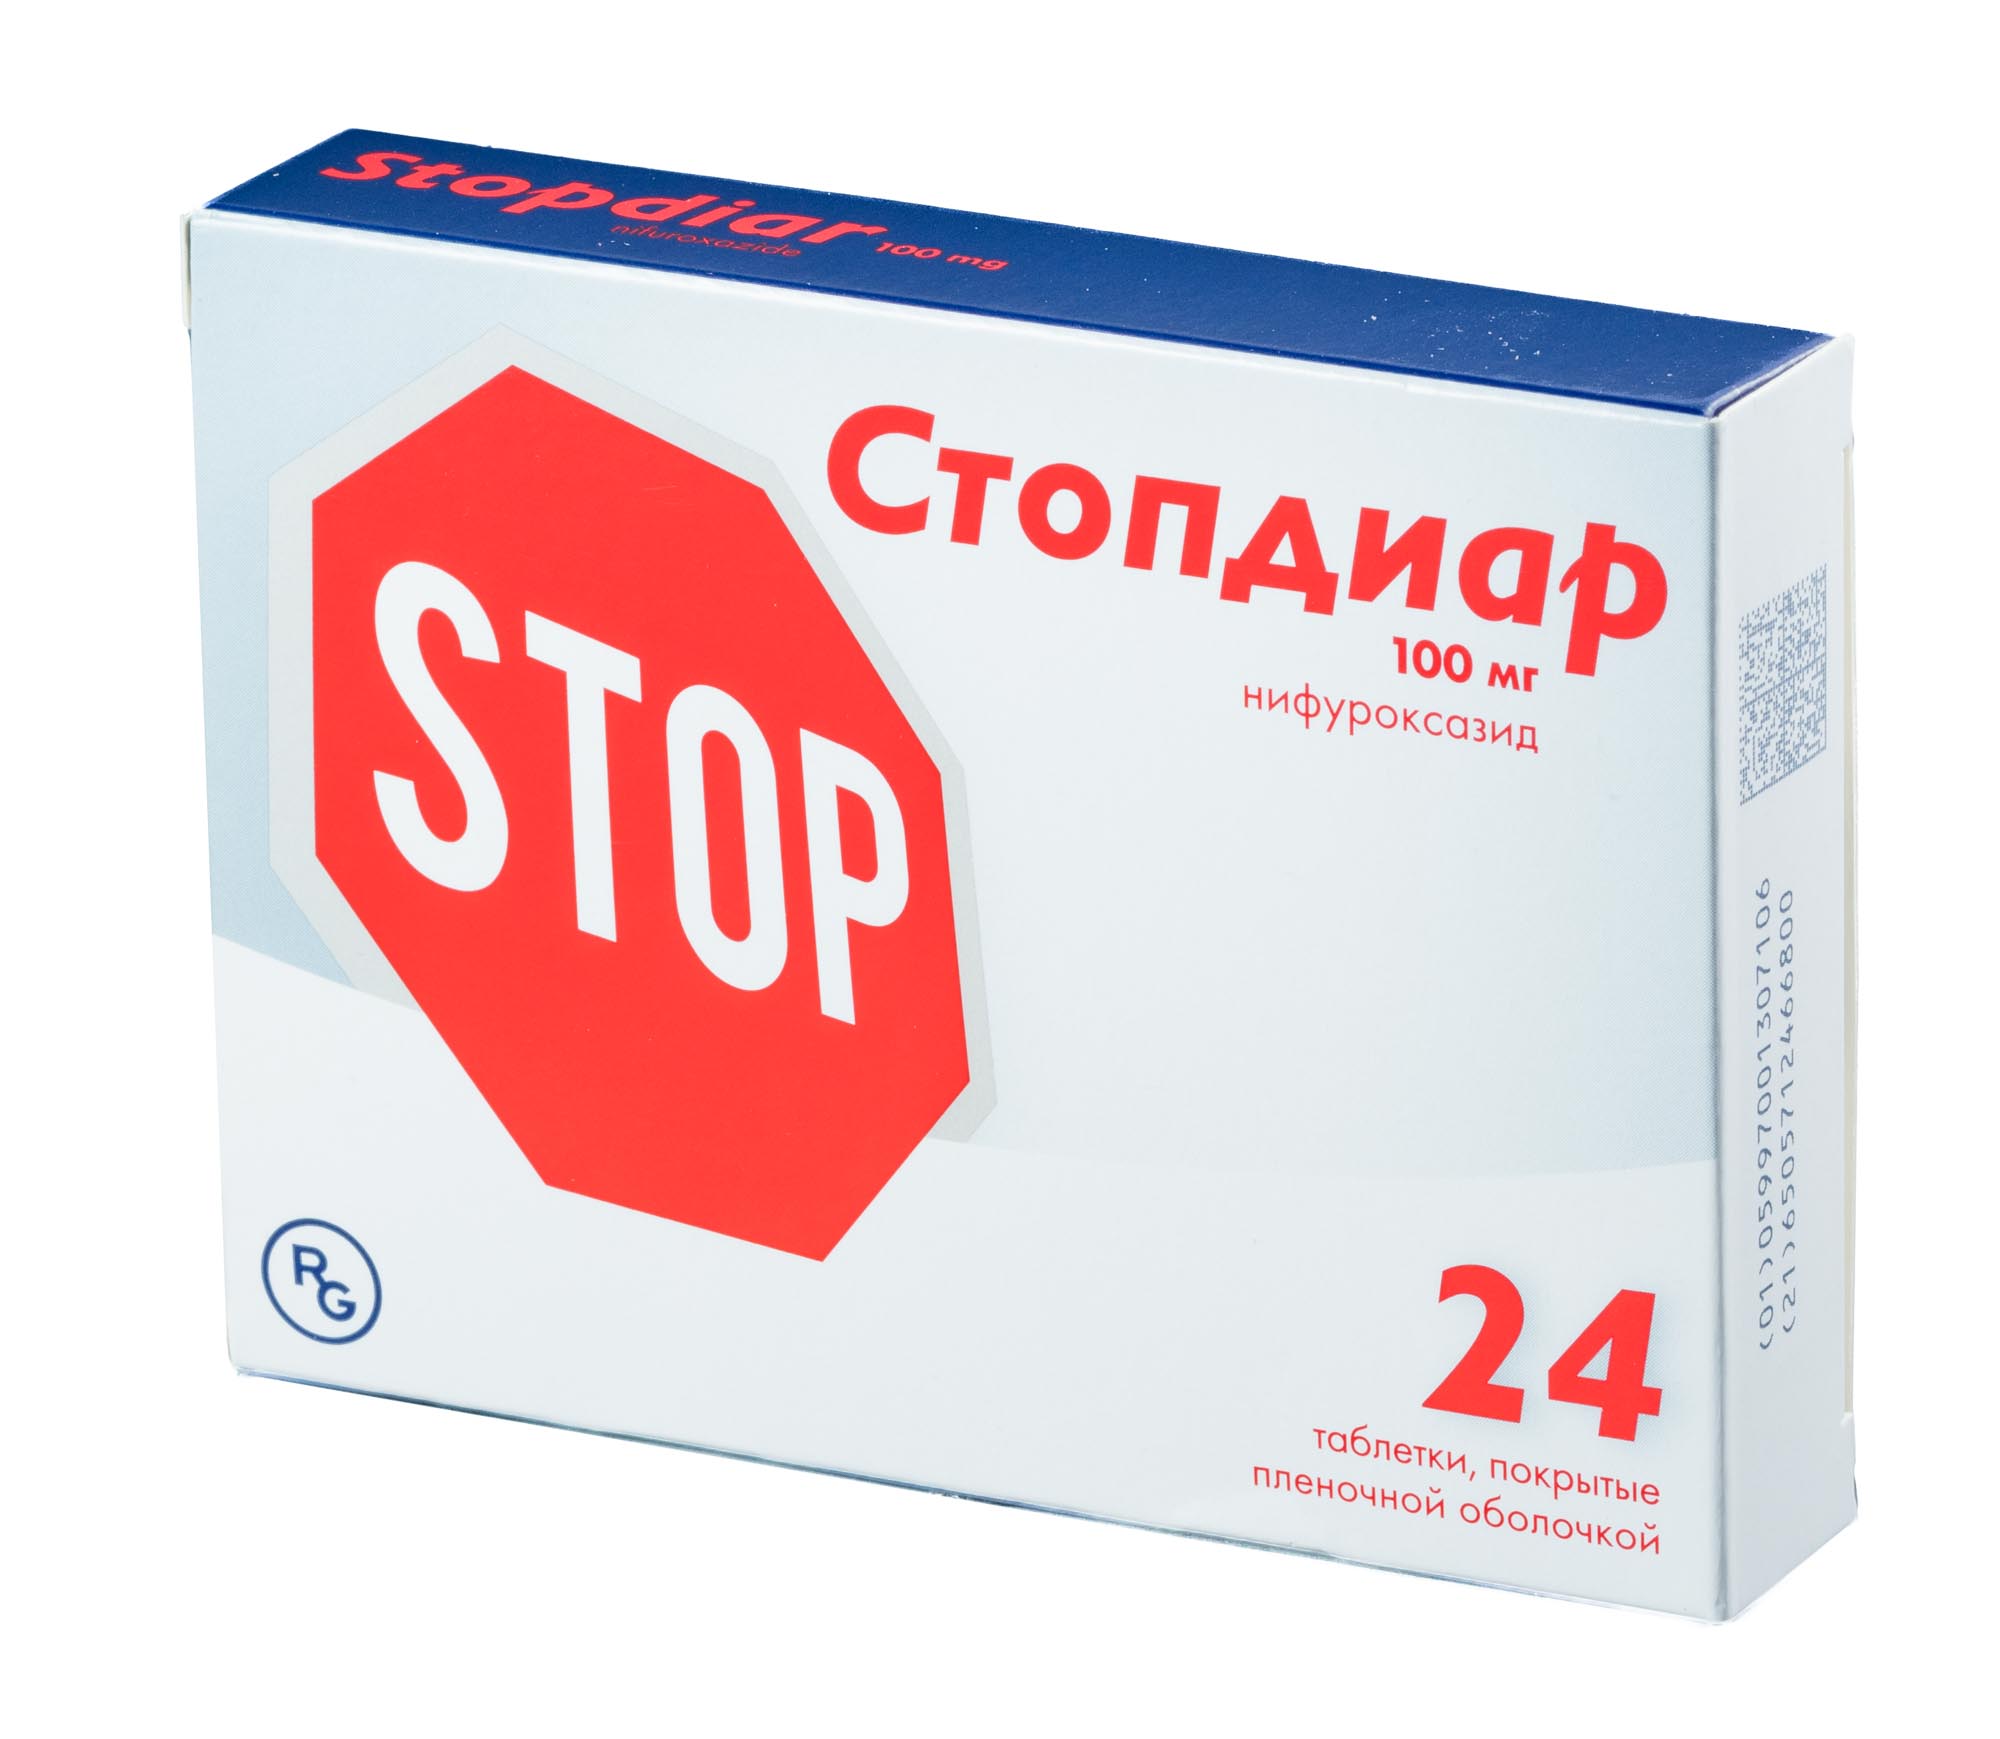 Стопдиар, таблетки покрыт. плен. об. 100 мг, 24 шт.